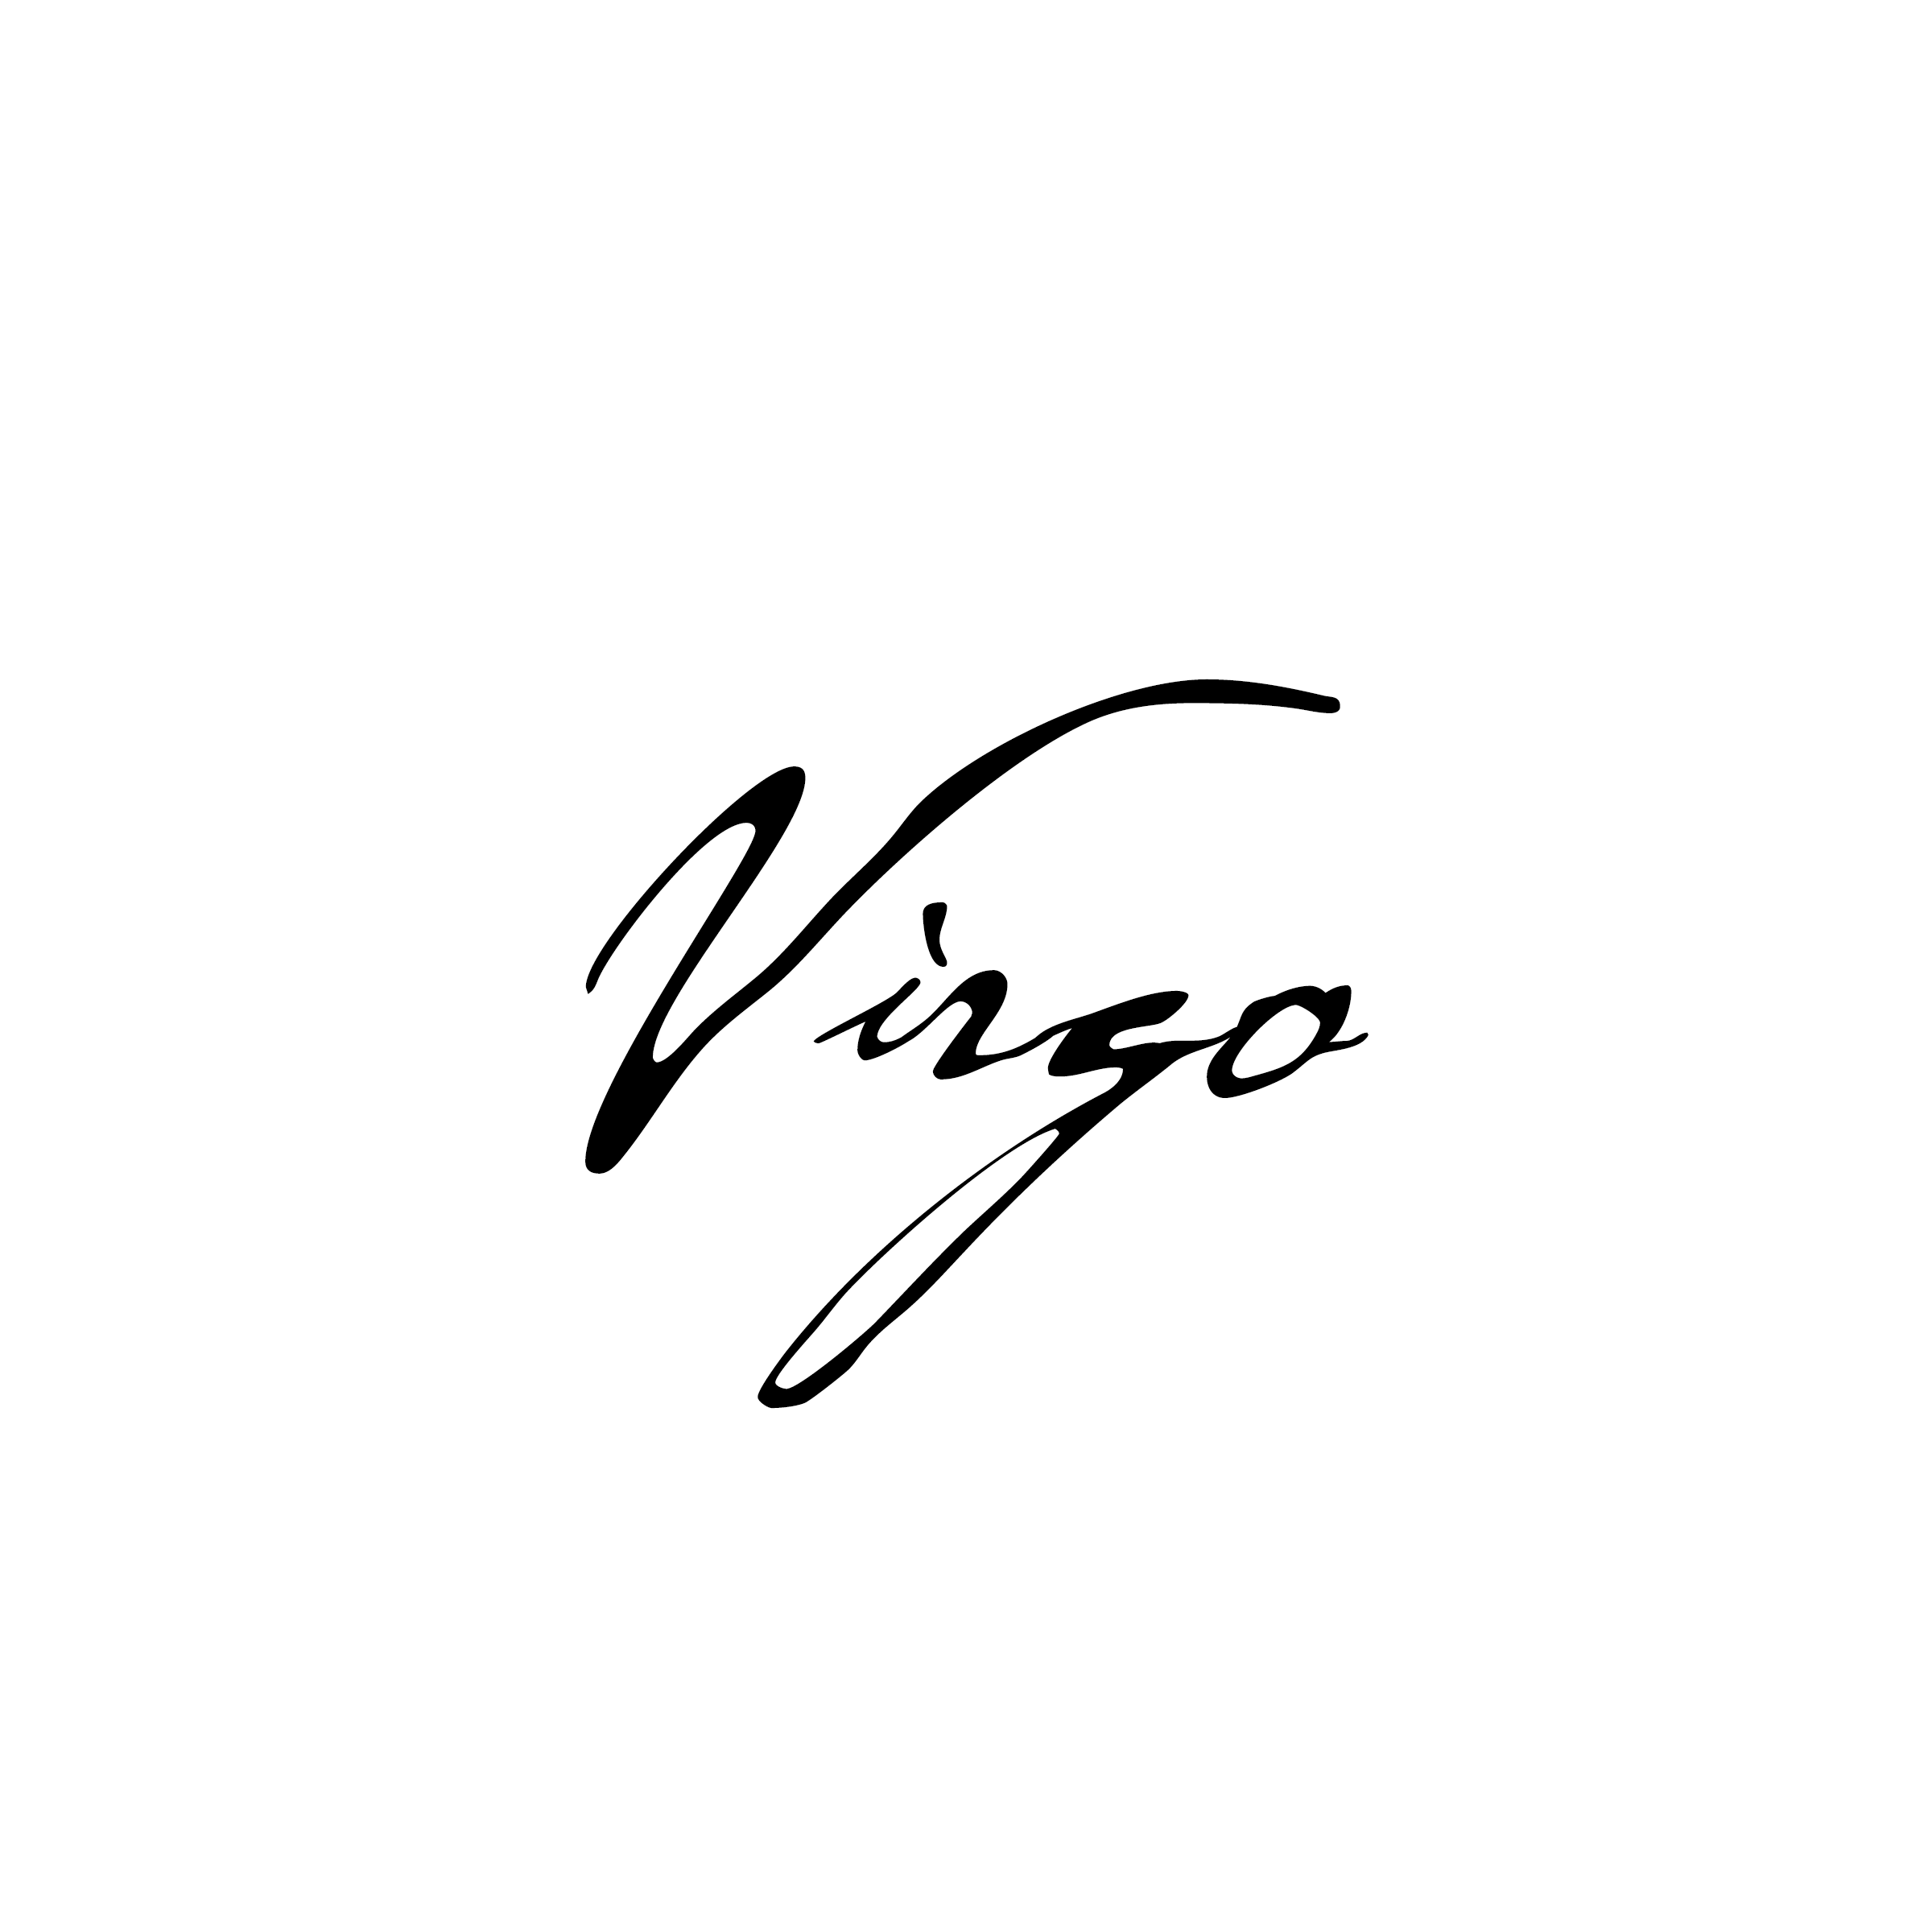 Happy Virgo Season, everyone!